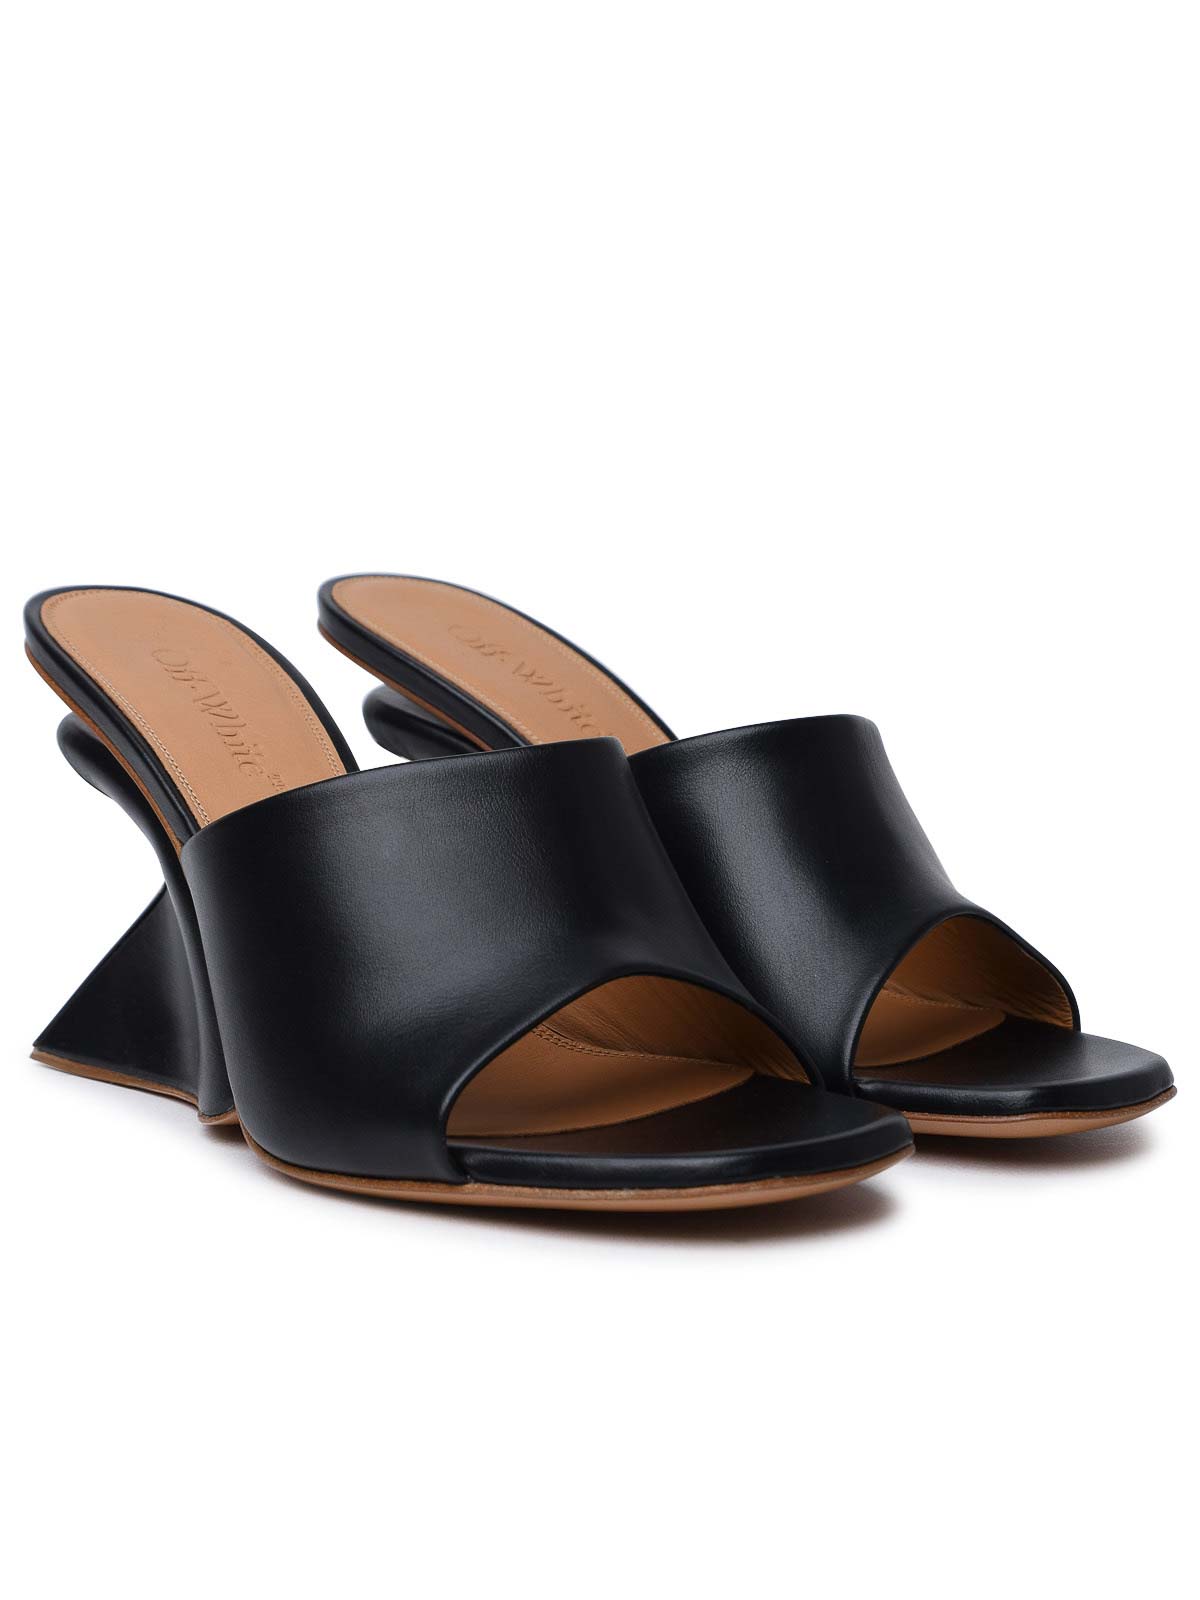 Shop Off-white Jug Black Leather Sandals